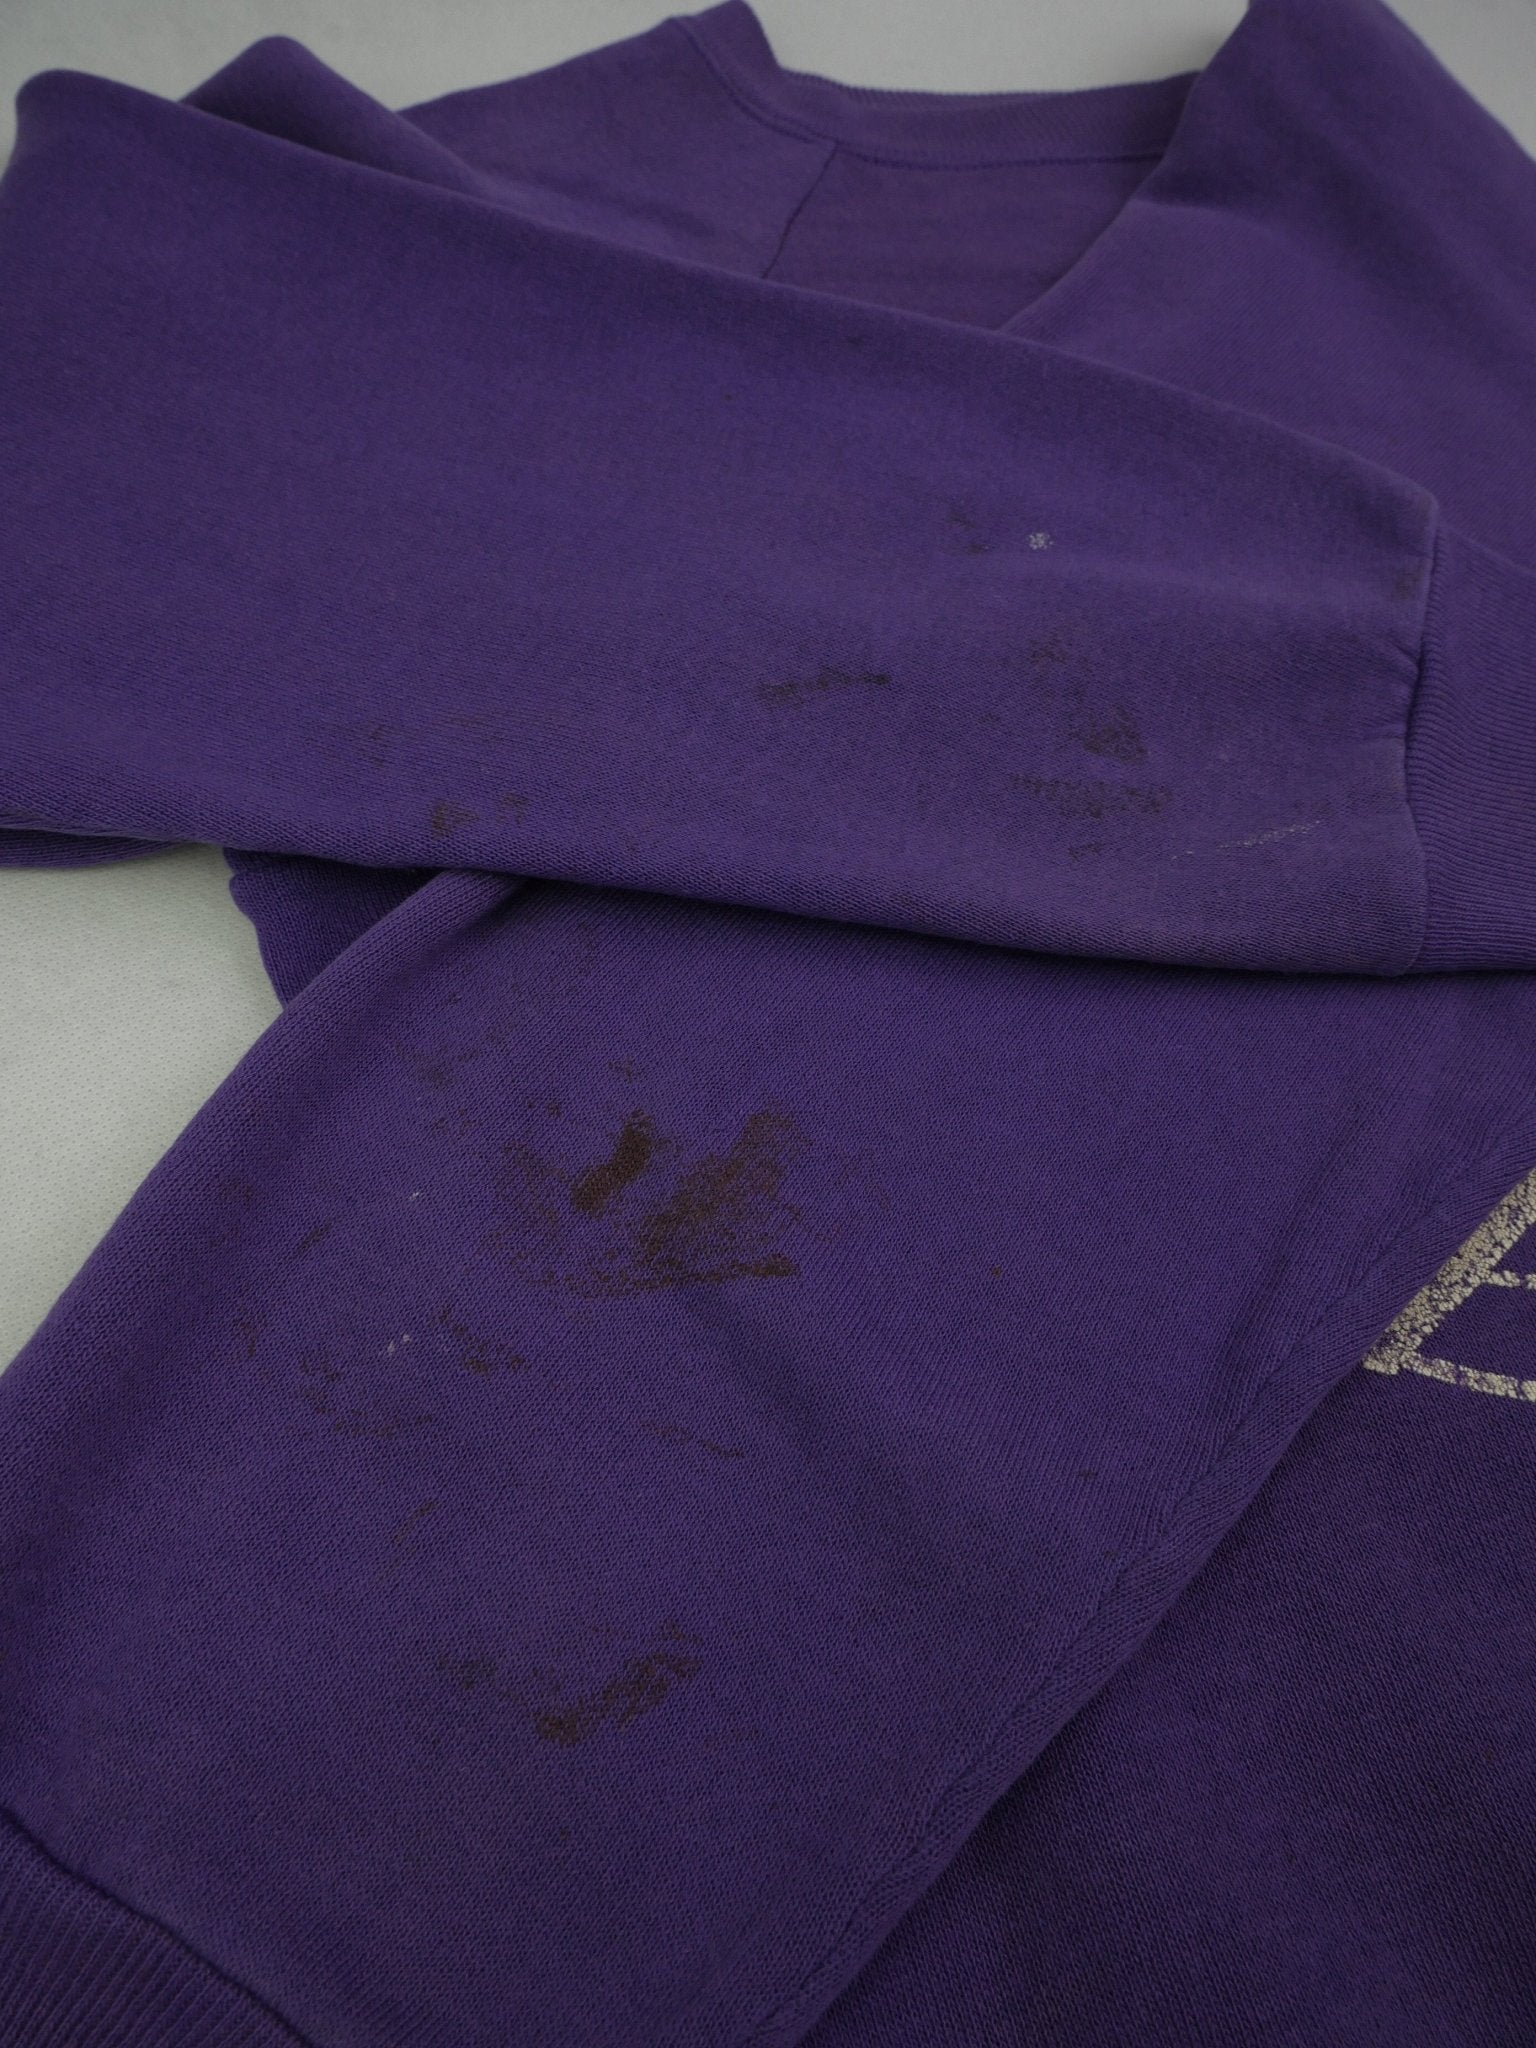 champion 'Minnesota Vikings' printed Graphic Vintage purple Sweater - Peeces